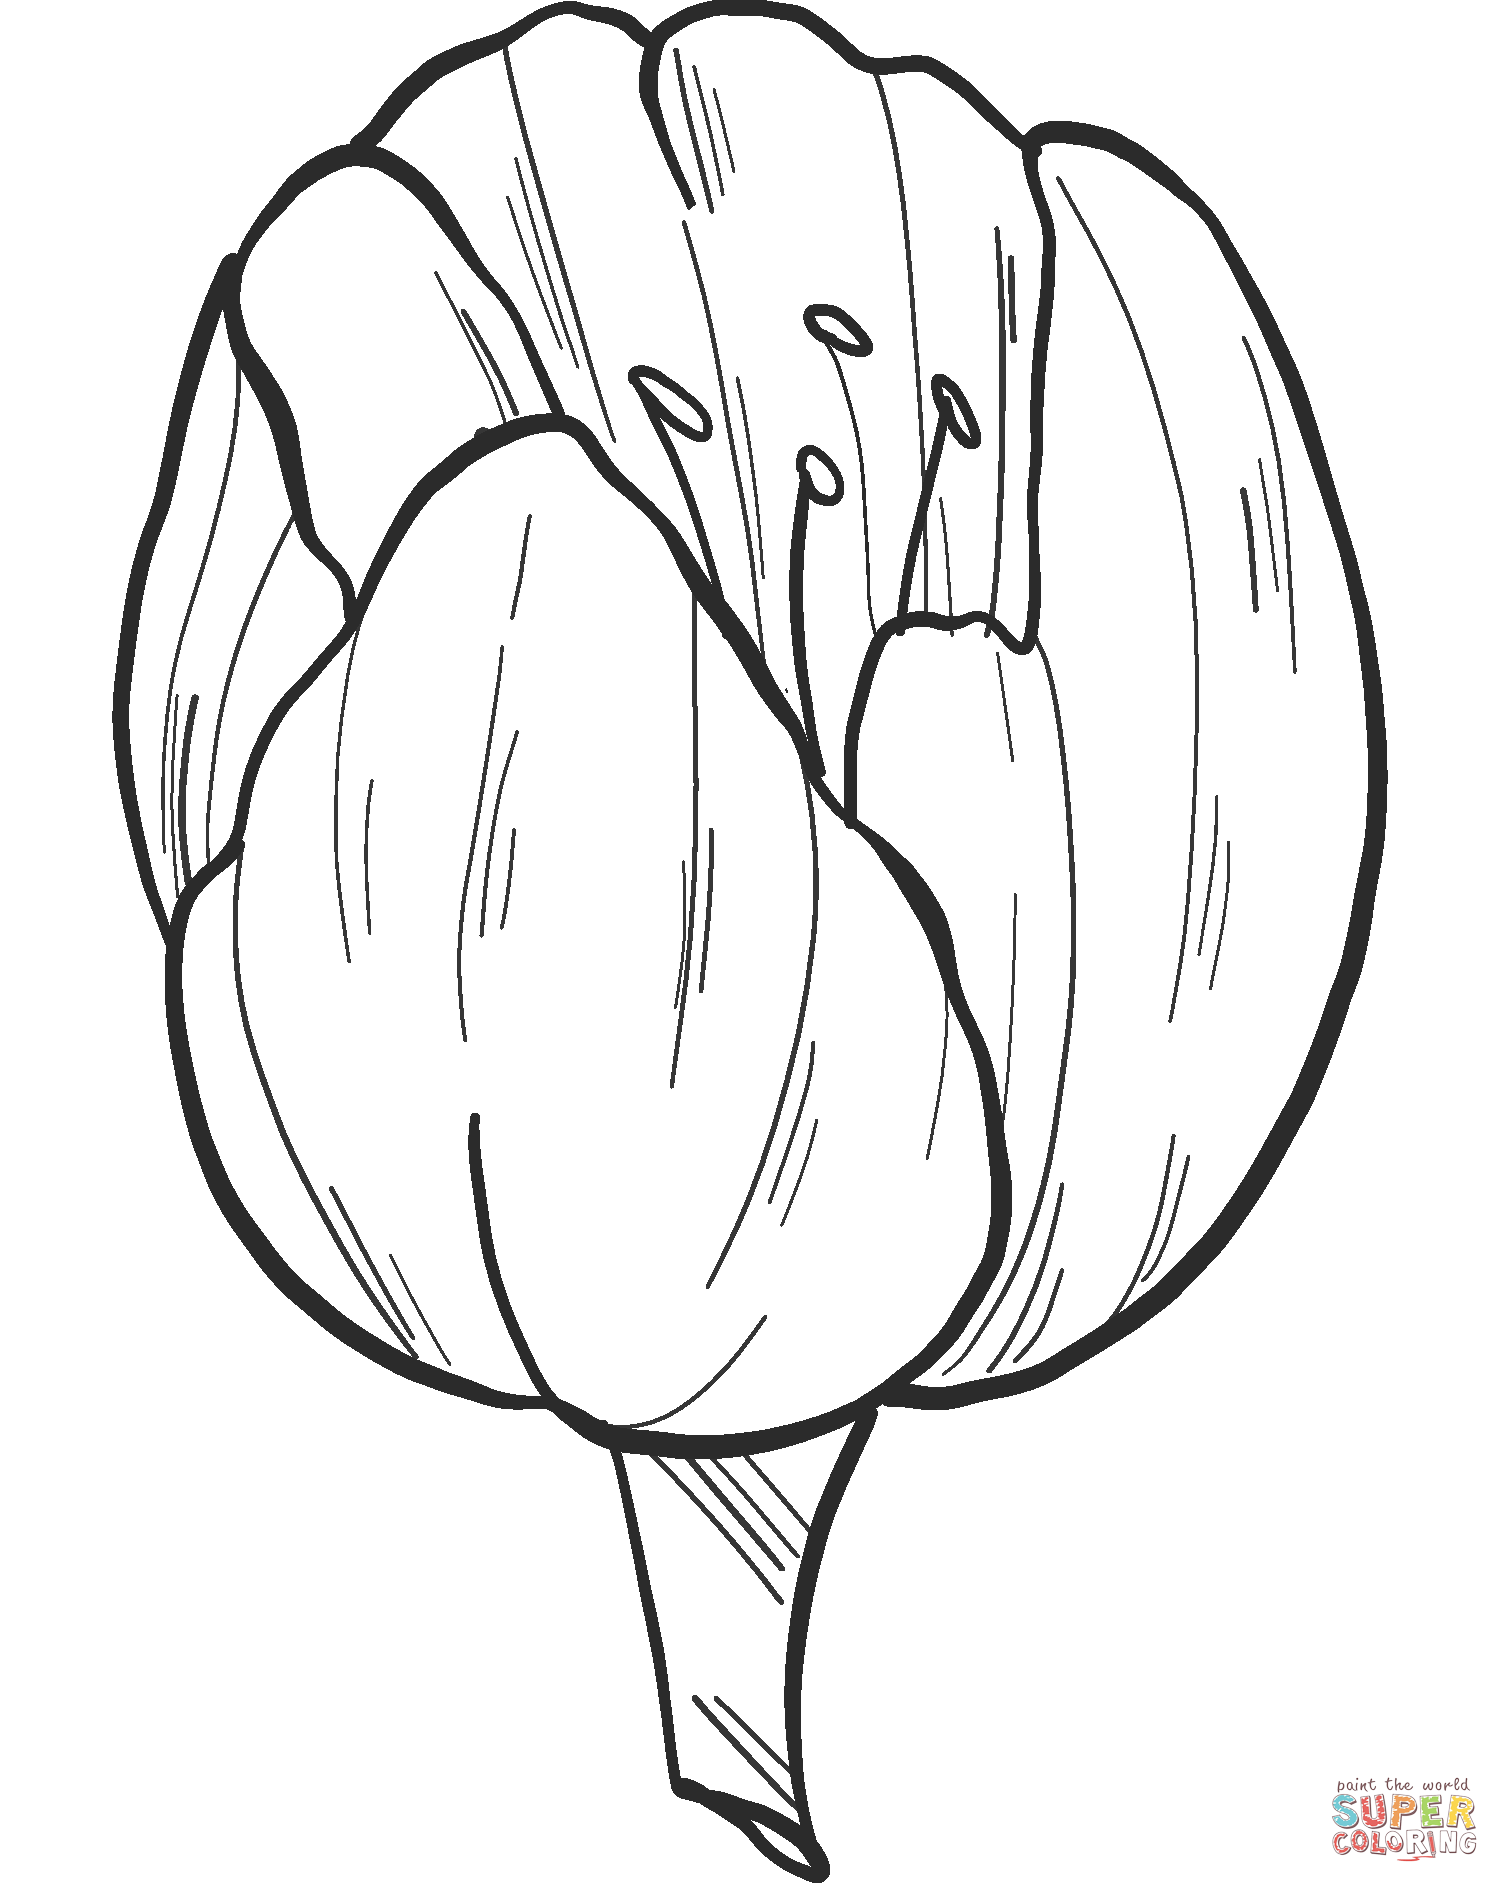 Tulp van Tulp